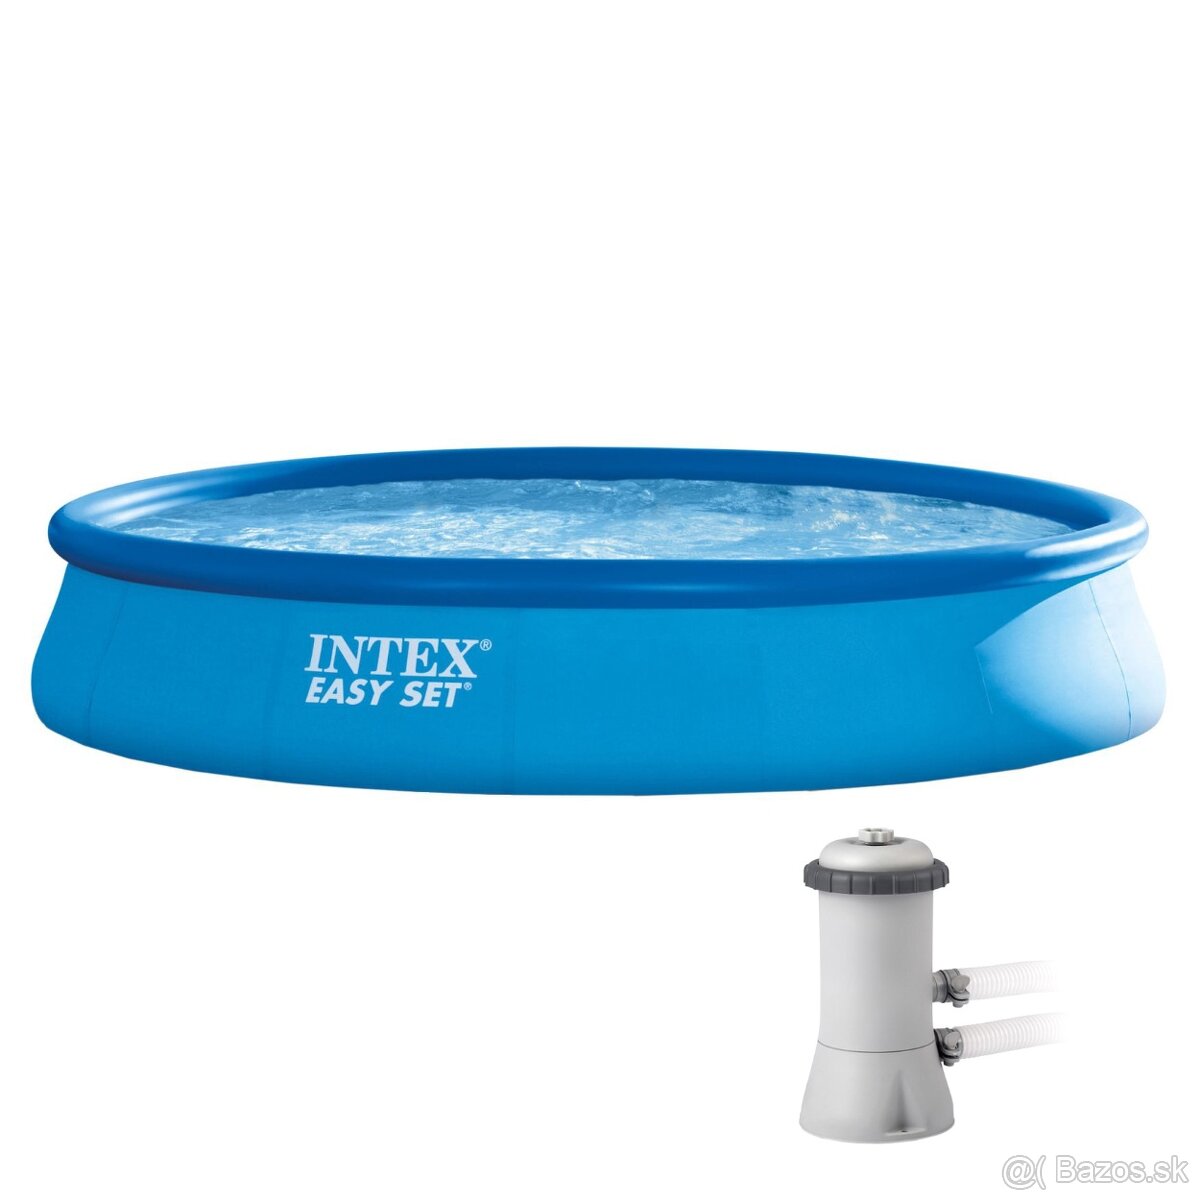 Predám používaný bazén INTEX easy set pool 457cmx84cm